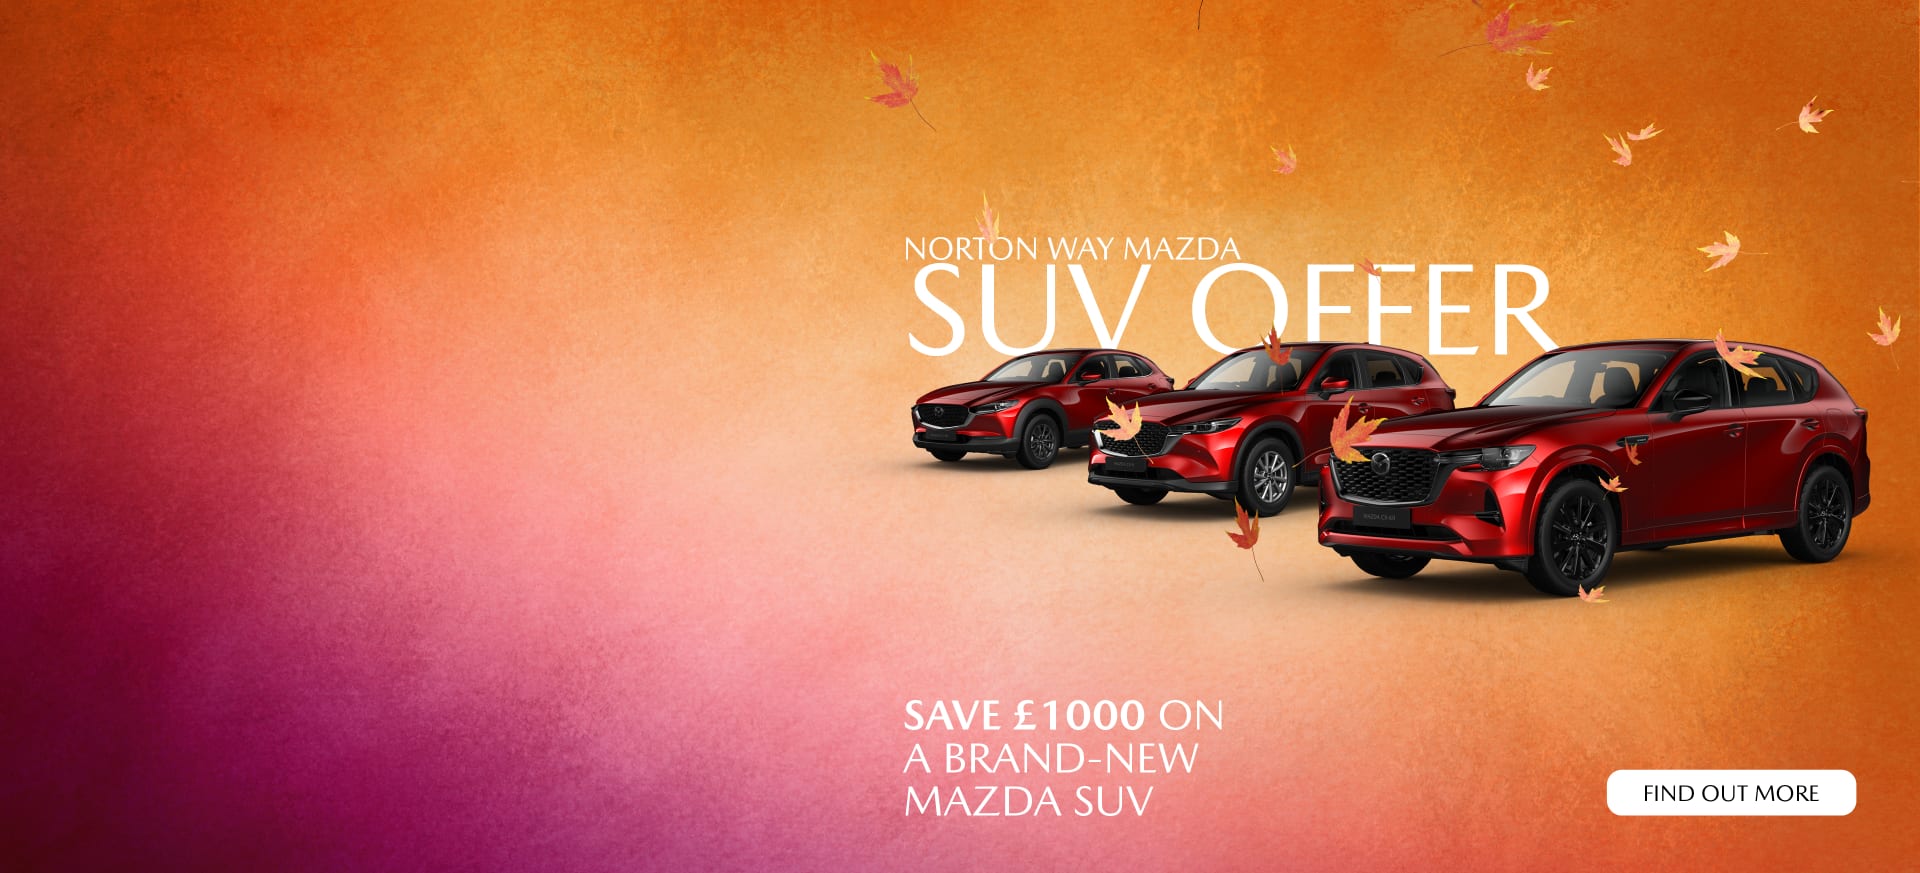 Mazda SUV Offer